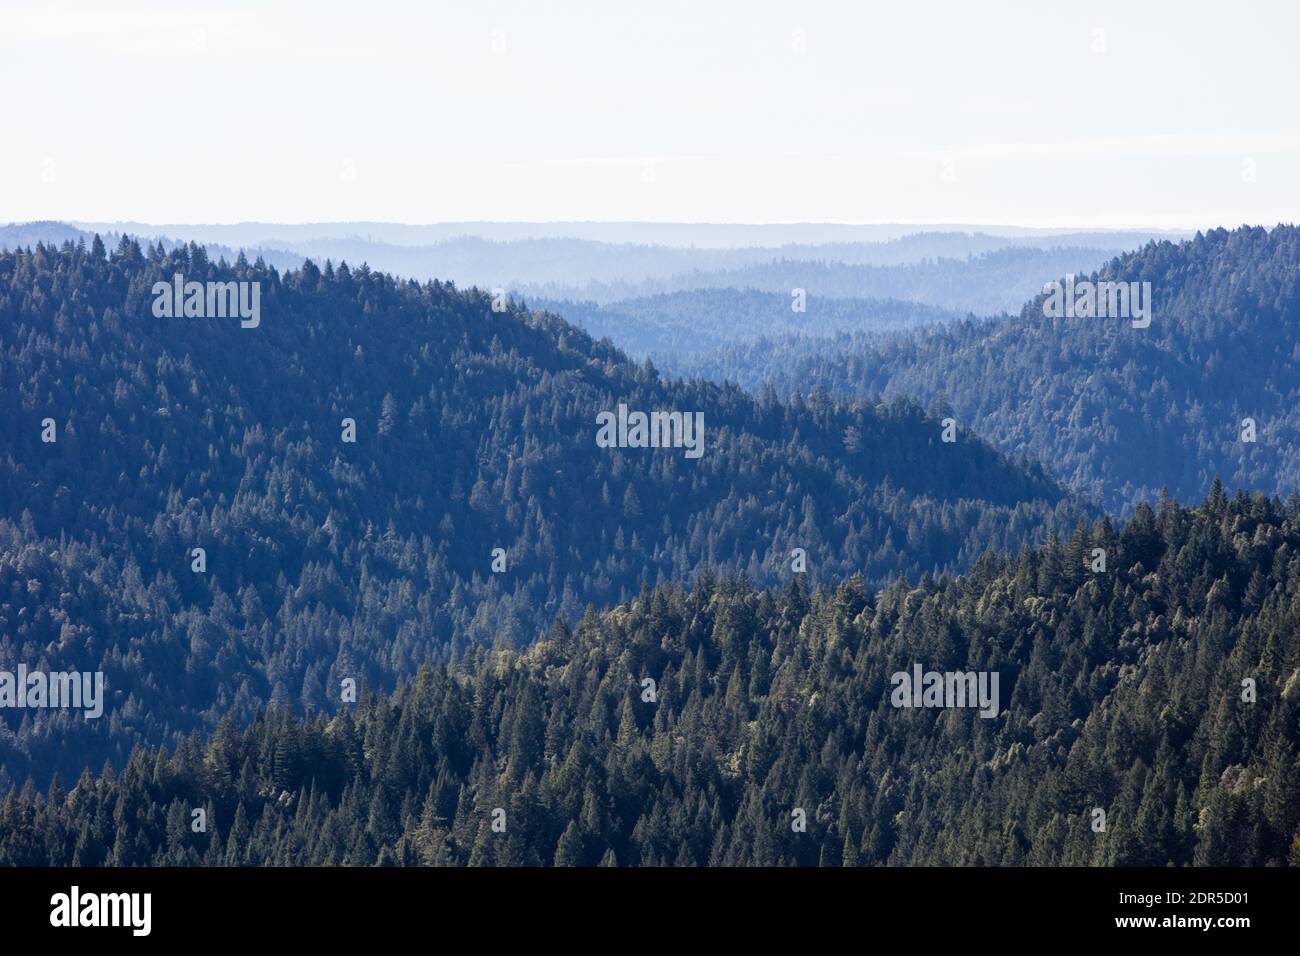 Gli alberi di sequoia, sempervirens di Sequoia, crescono in una foresta costiera umida nella California del Nord. Le sequoie a rischio di estinzione sono gli alberi più grandi della Terra. Foto Stock